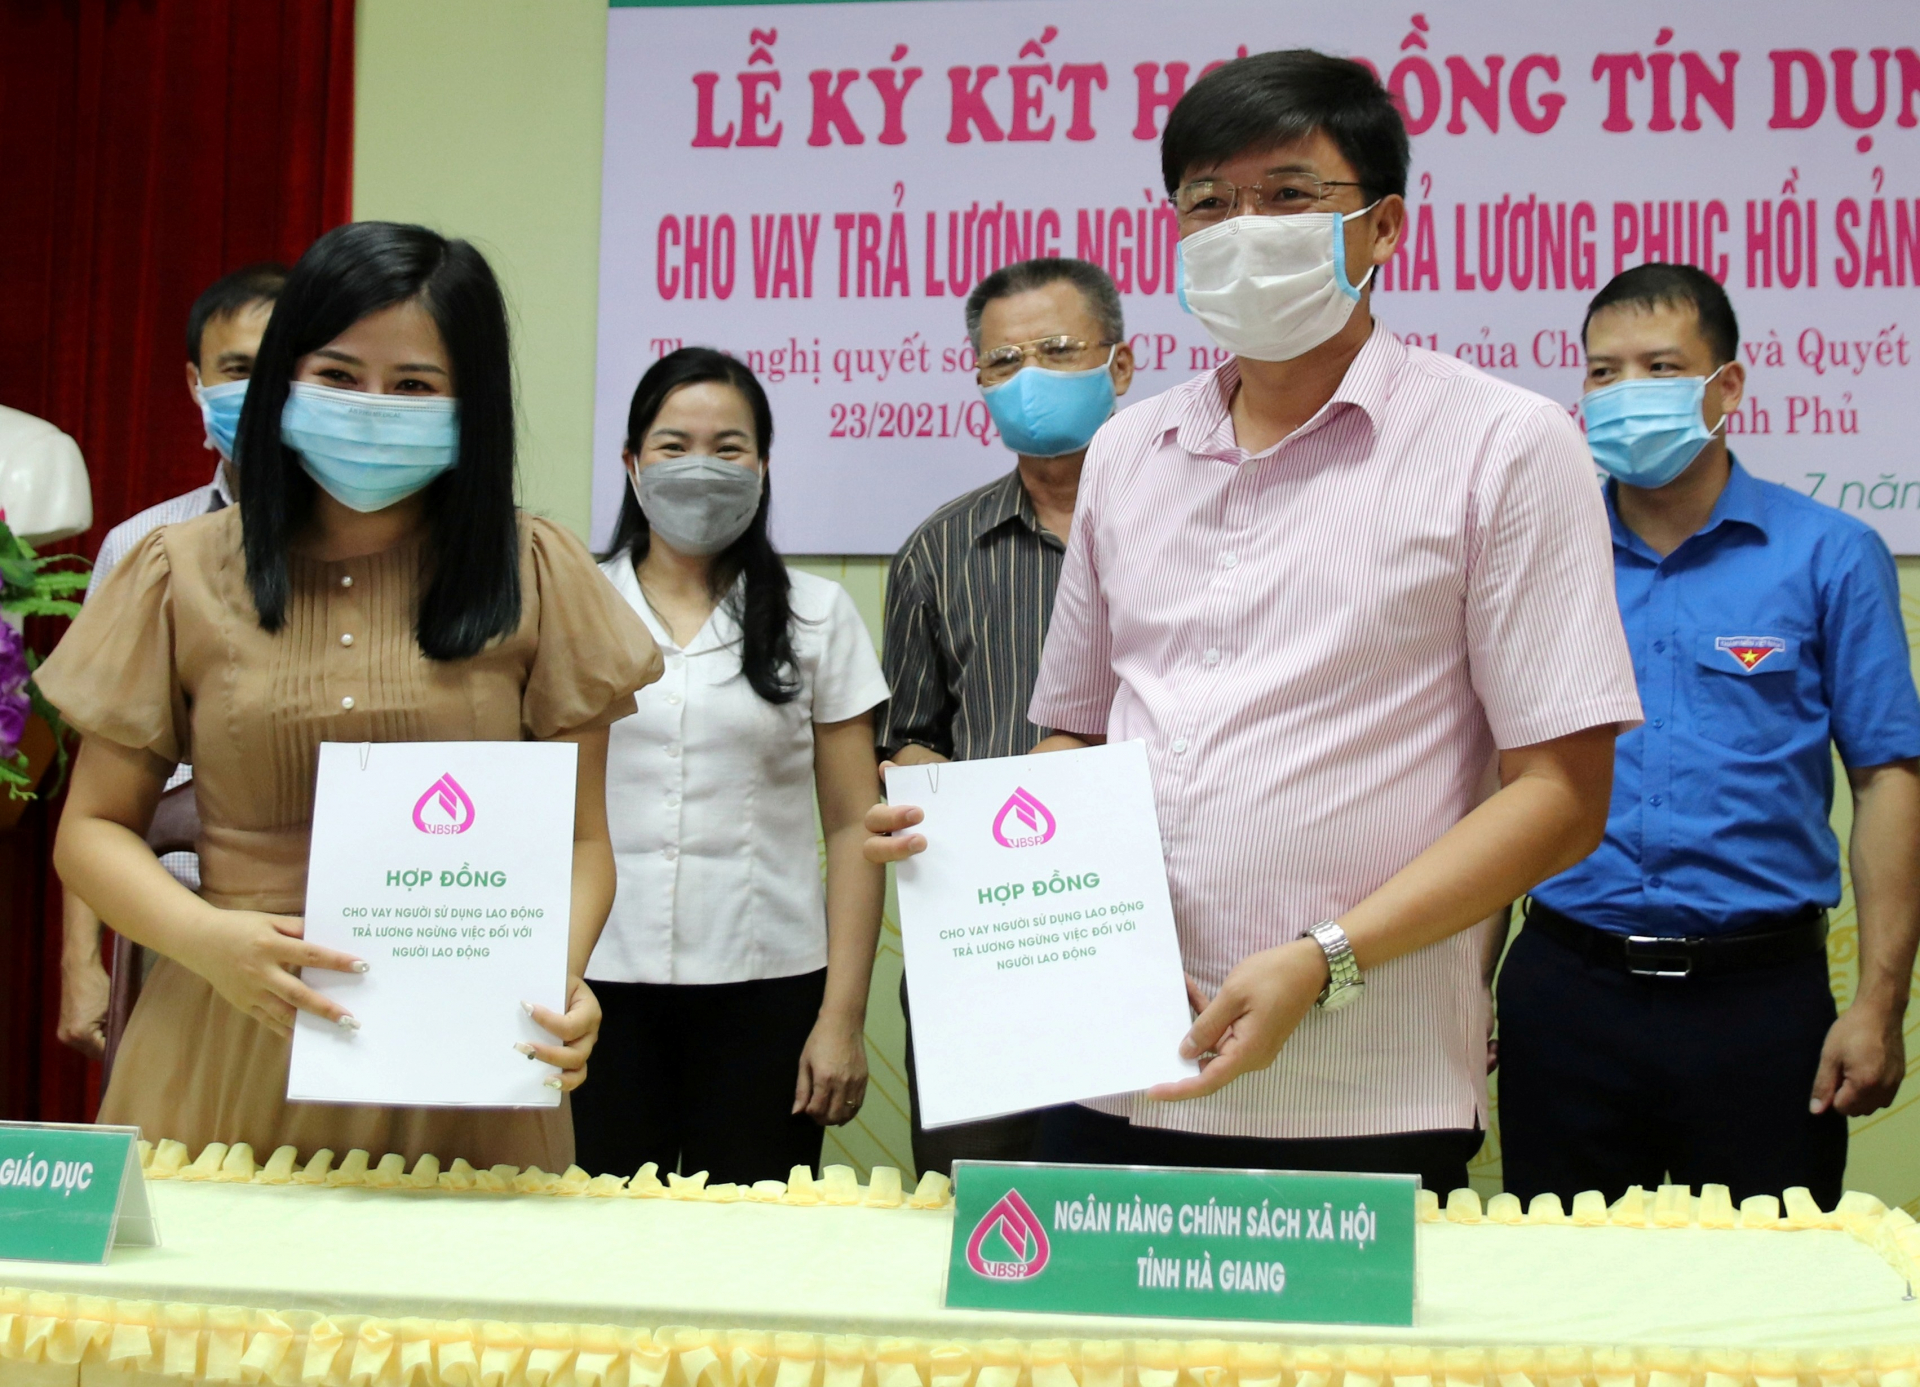 Đại diện Công ty TNHH Phát triển giáo dục WunderKind (thành phố Hà Giang) ký kết hợp đồng tín dụng với Ngân hàng CSXH tỉnh để vay vốn trả lương ngừng việc cho 8 lao động.